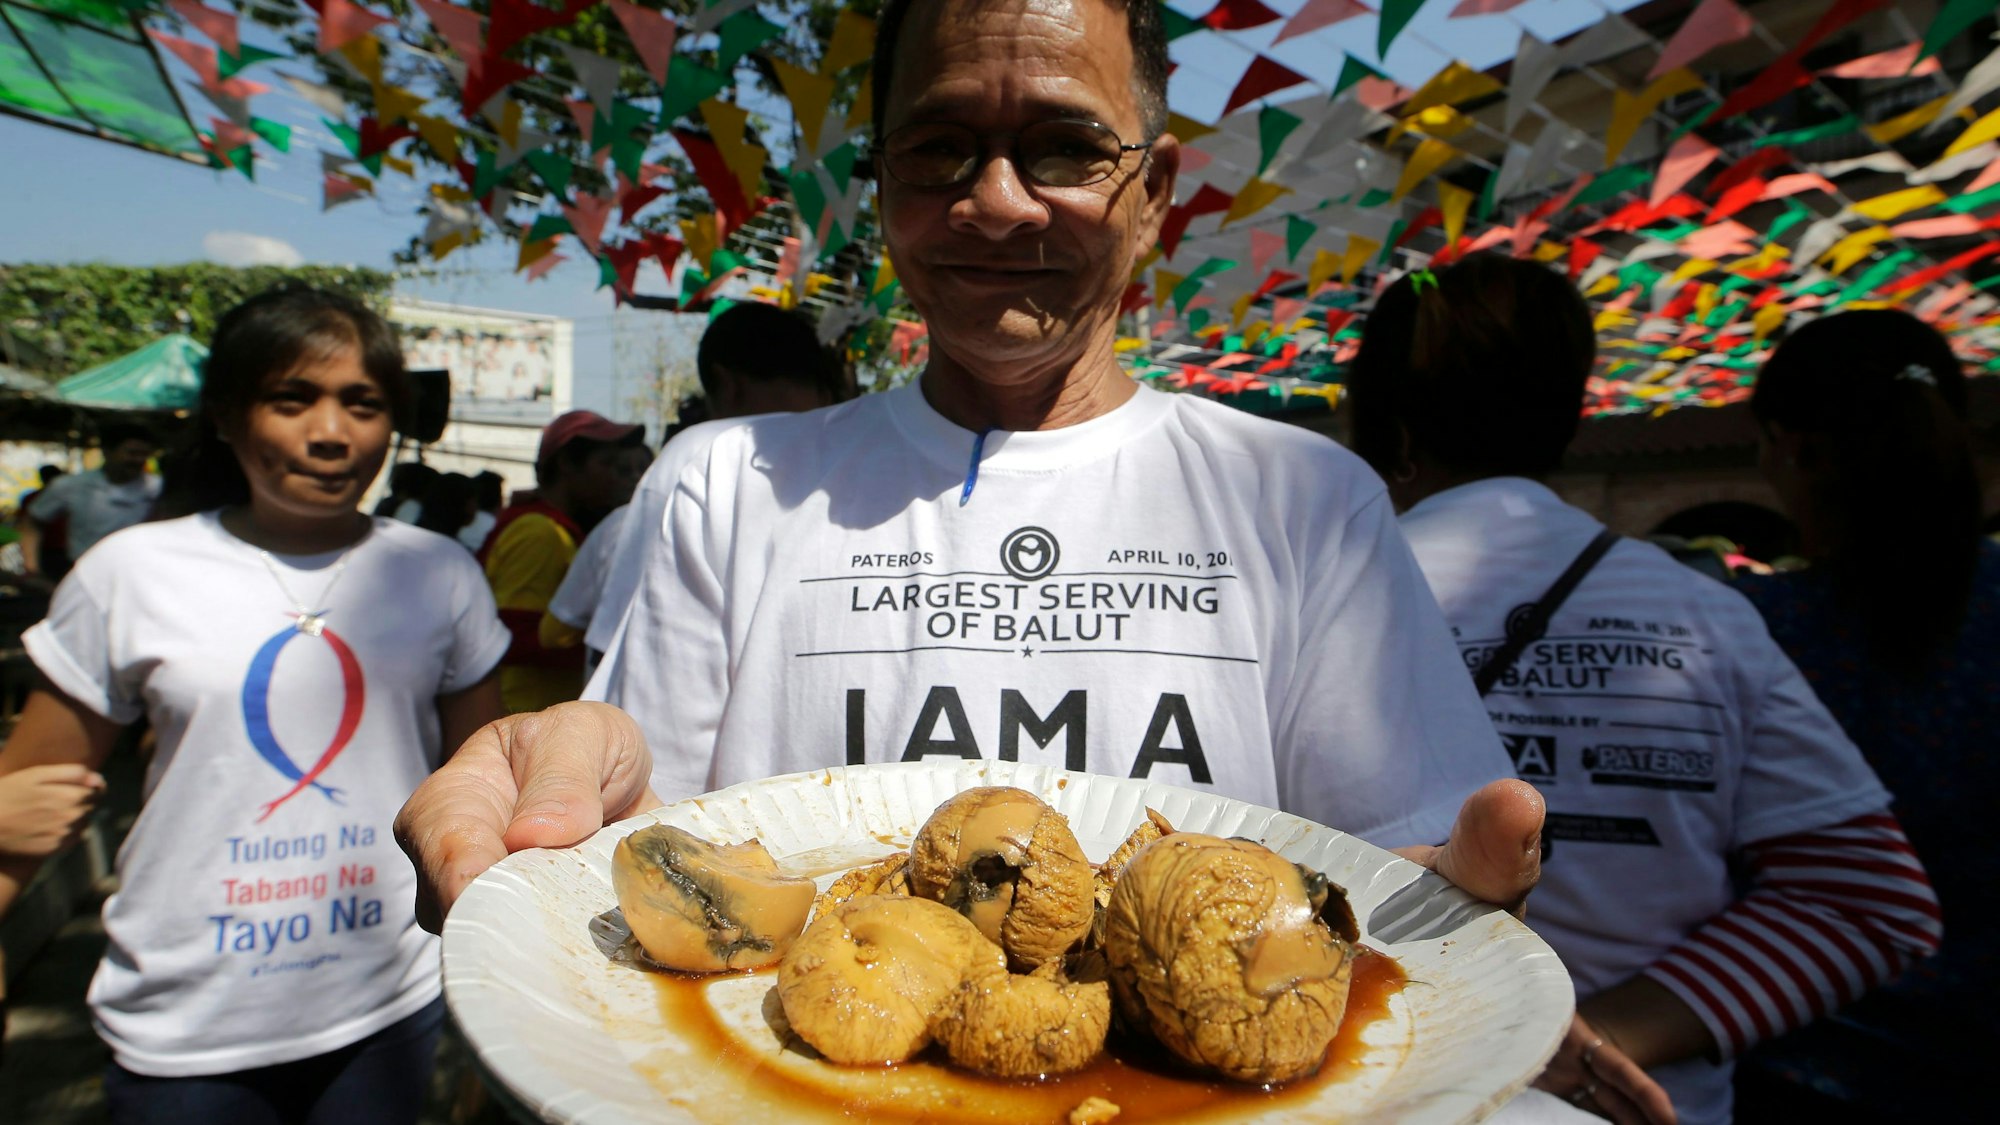 Ein Filipino zeigt einen Teller mit Balut.